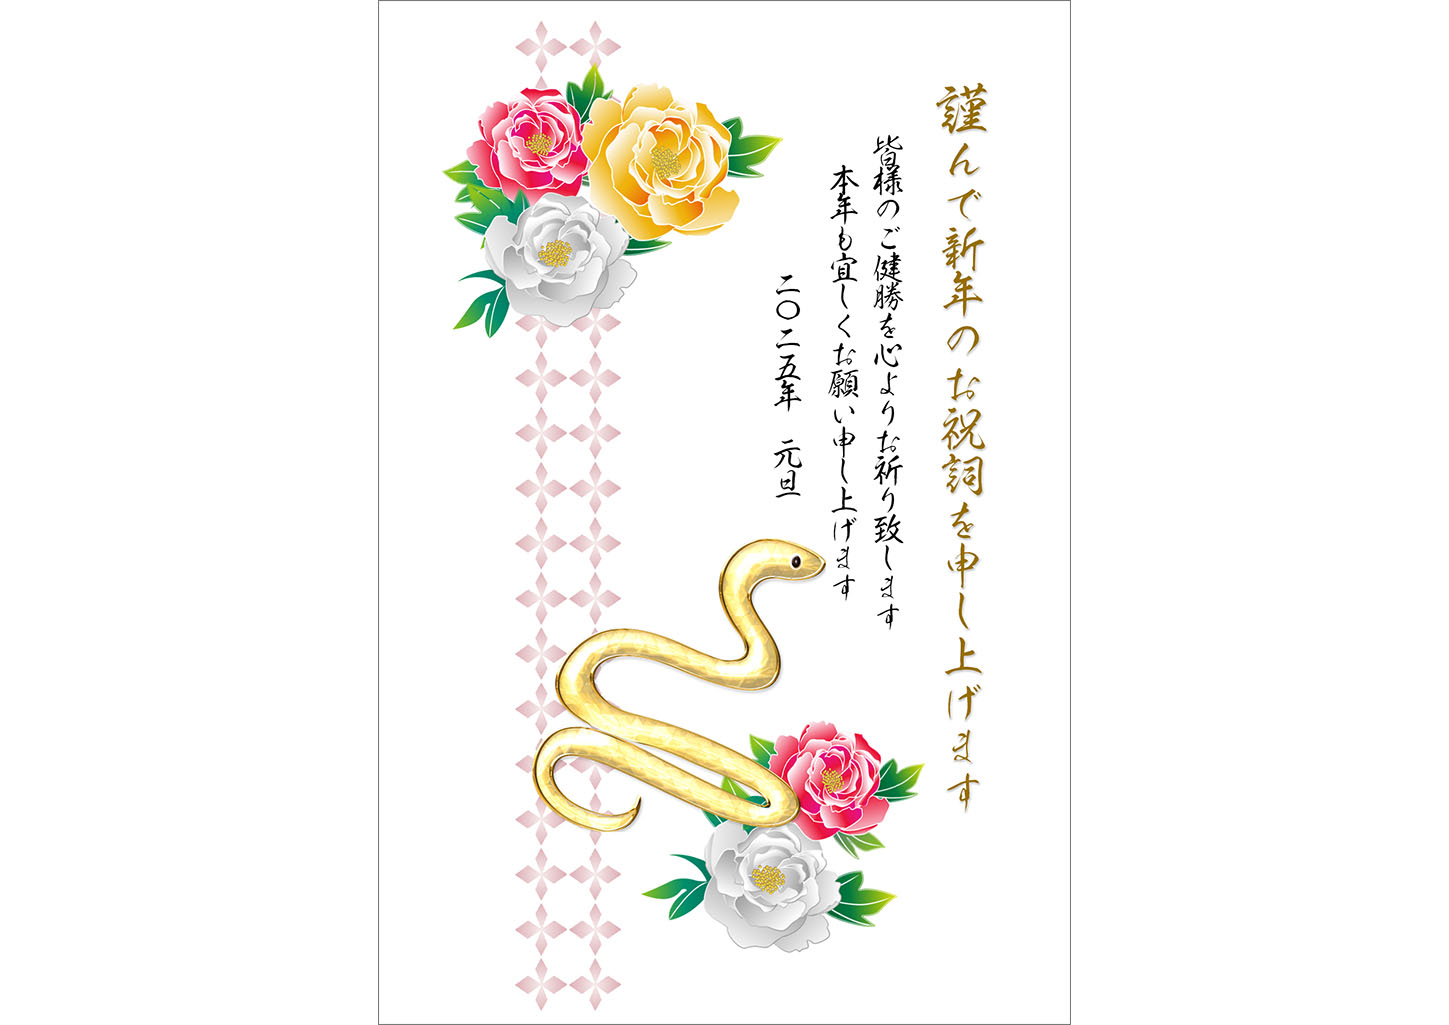 綺麗な蛇とカラフルな牡丹の年賀状テンプレート無料デザイン素材